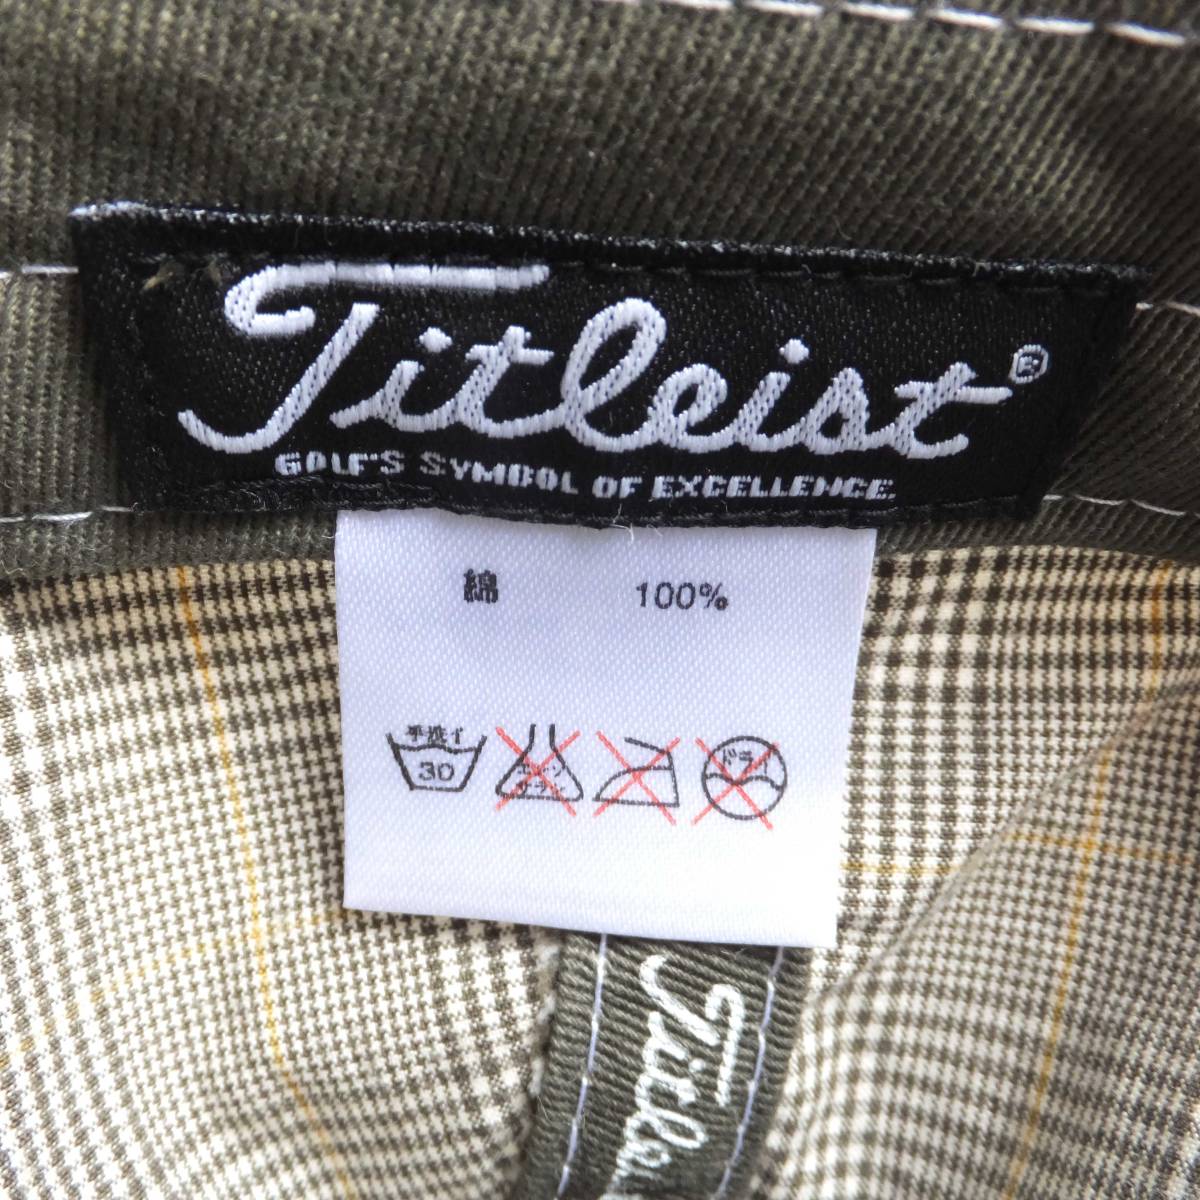 Titleist Titleist в клетку колпак мужской свободный размер хаки Golf одежда вышивка Logo 